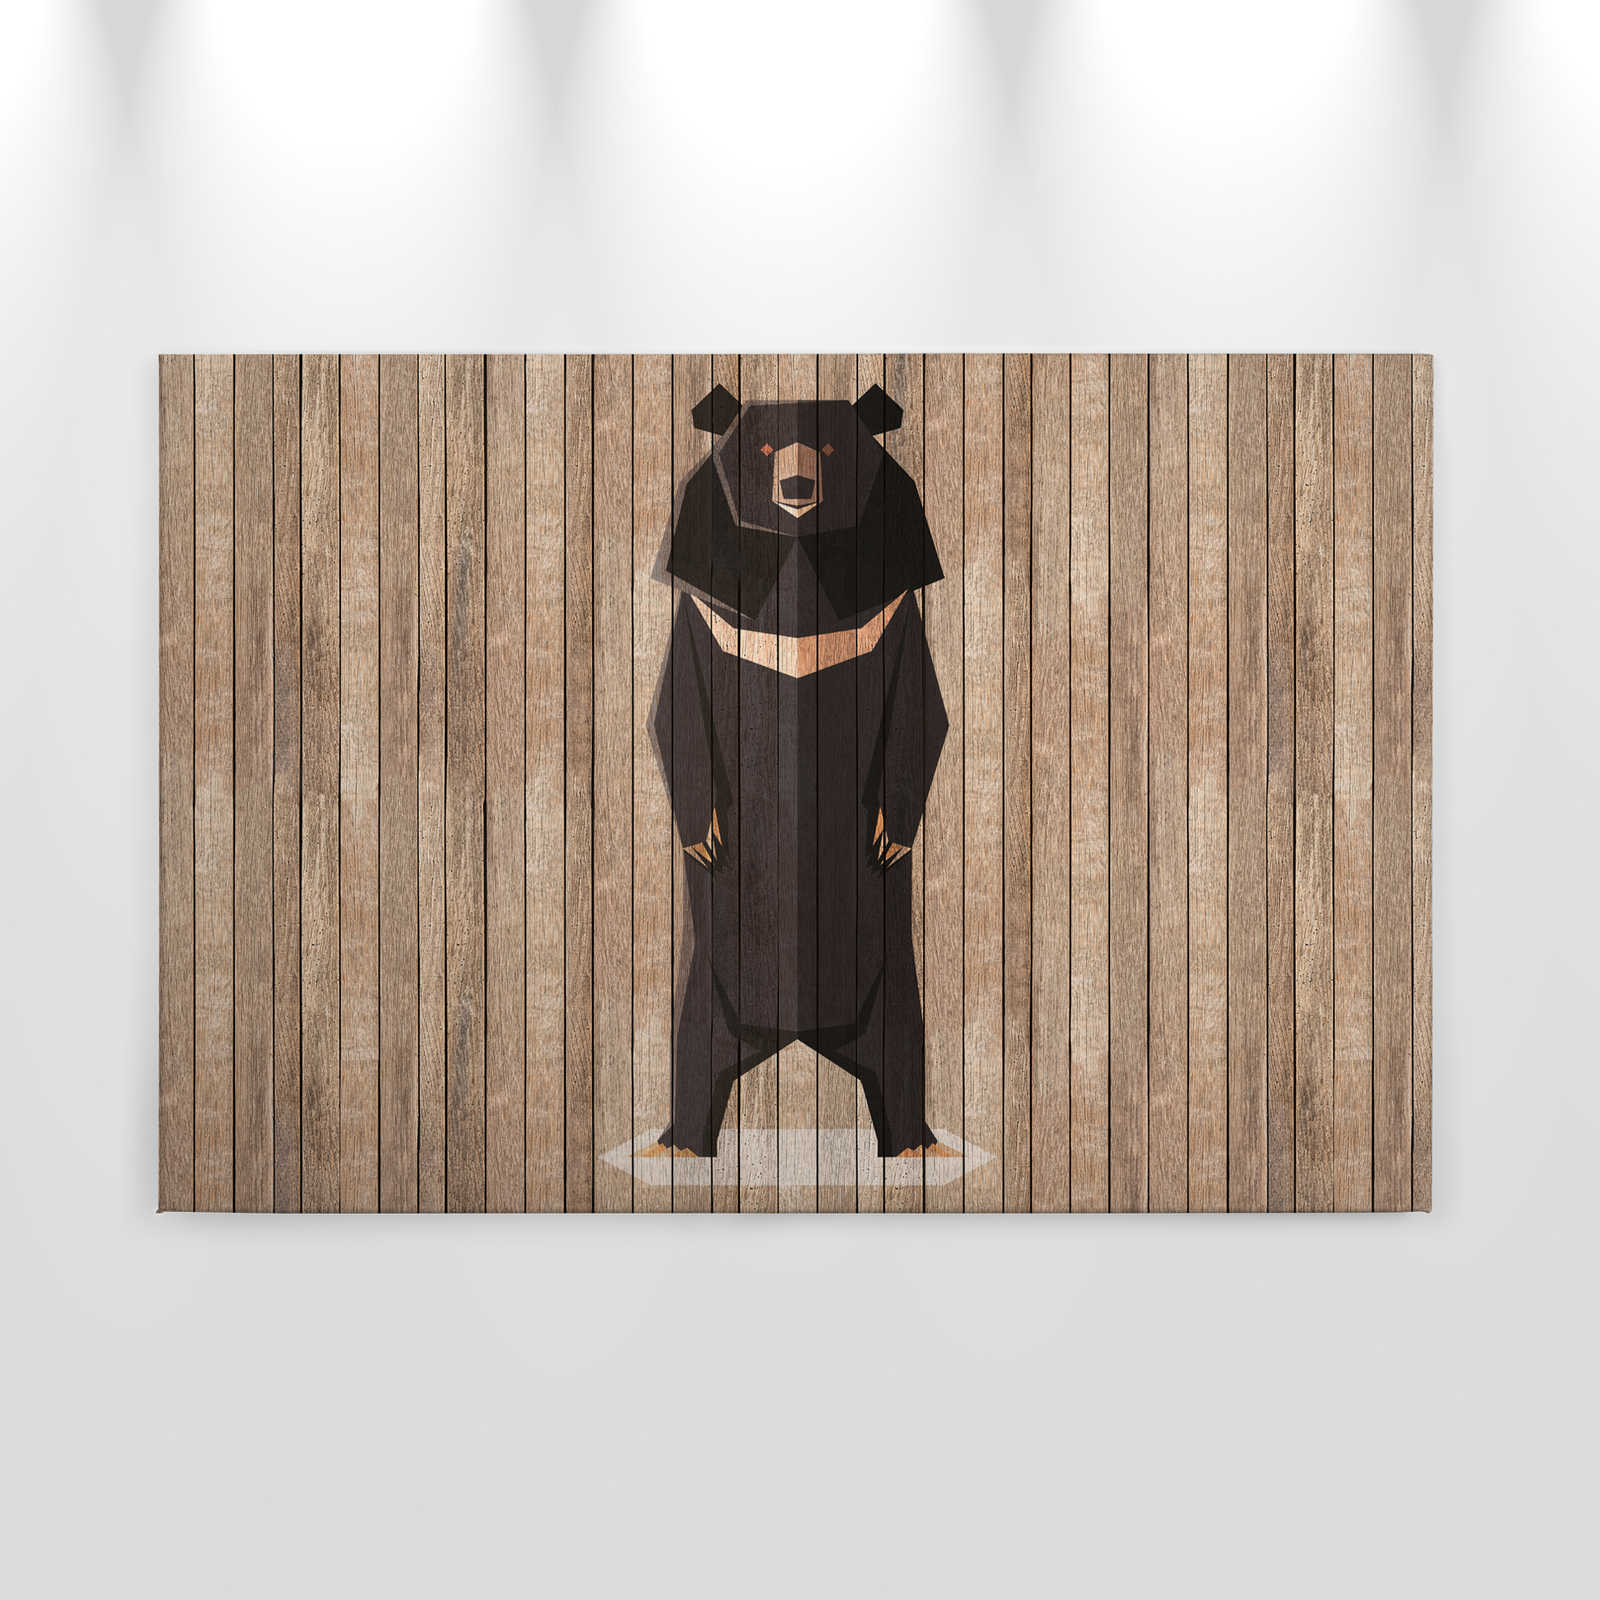             Nacido para ser salvaje 1 - Pintura en lienzo Tablero de pared con osos - Paneles de madera de ancho - 0,90 m x 0,60 m
        